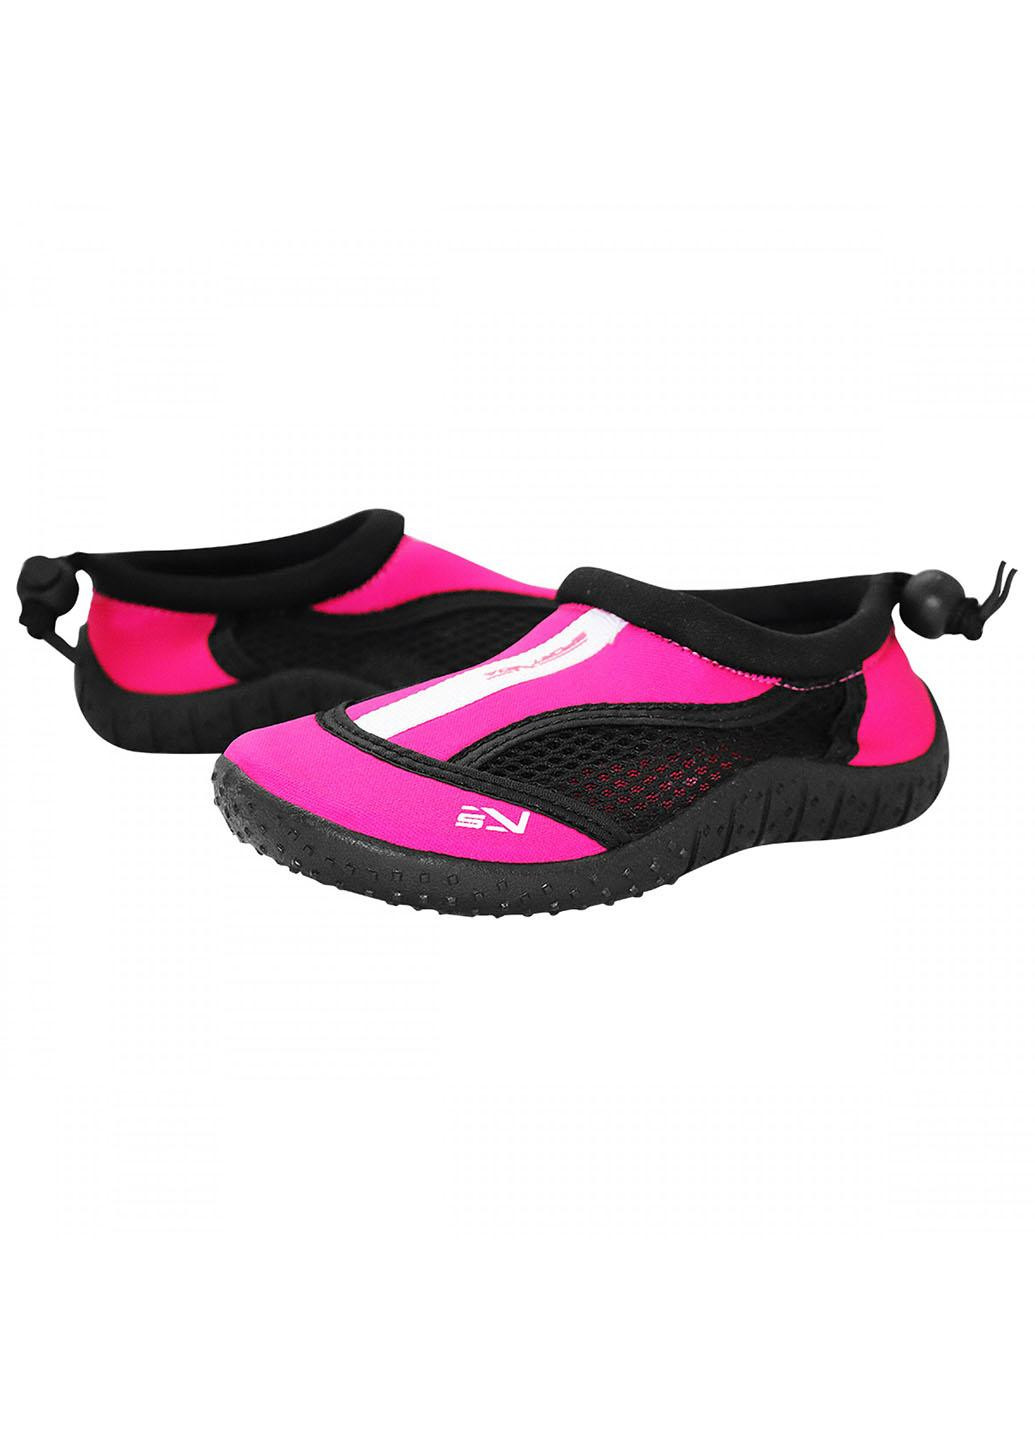 Обувь для пляжа и кораллов (аквашуз) SV-GY0001-R33 Size 33 Black/Pink SportVida (258486774)